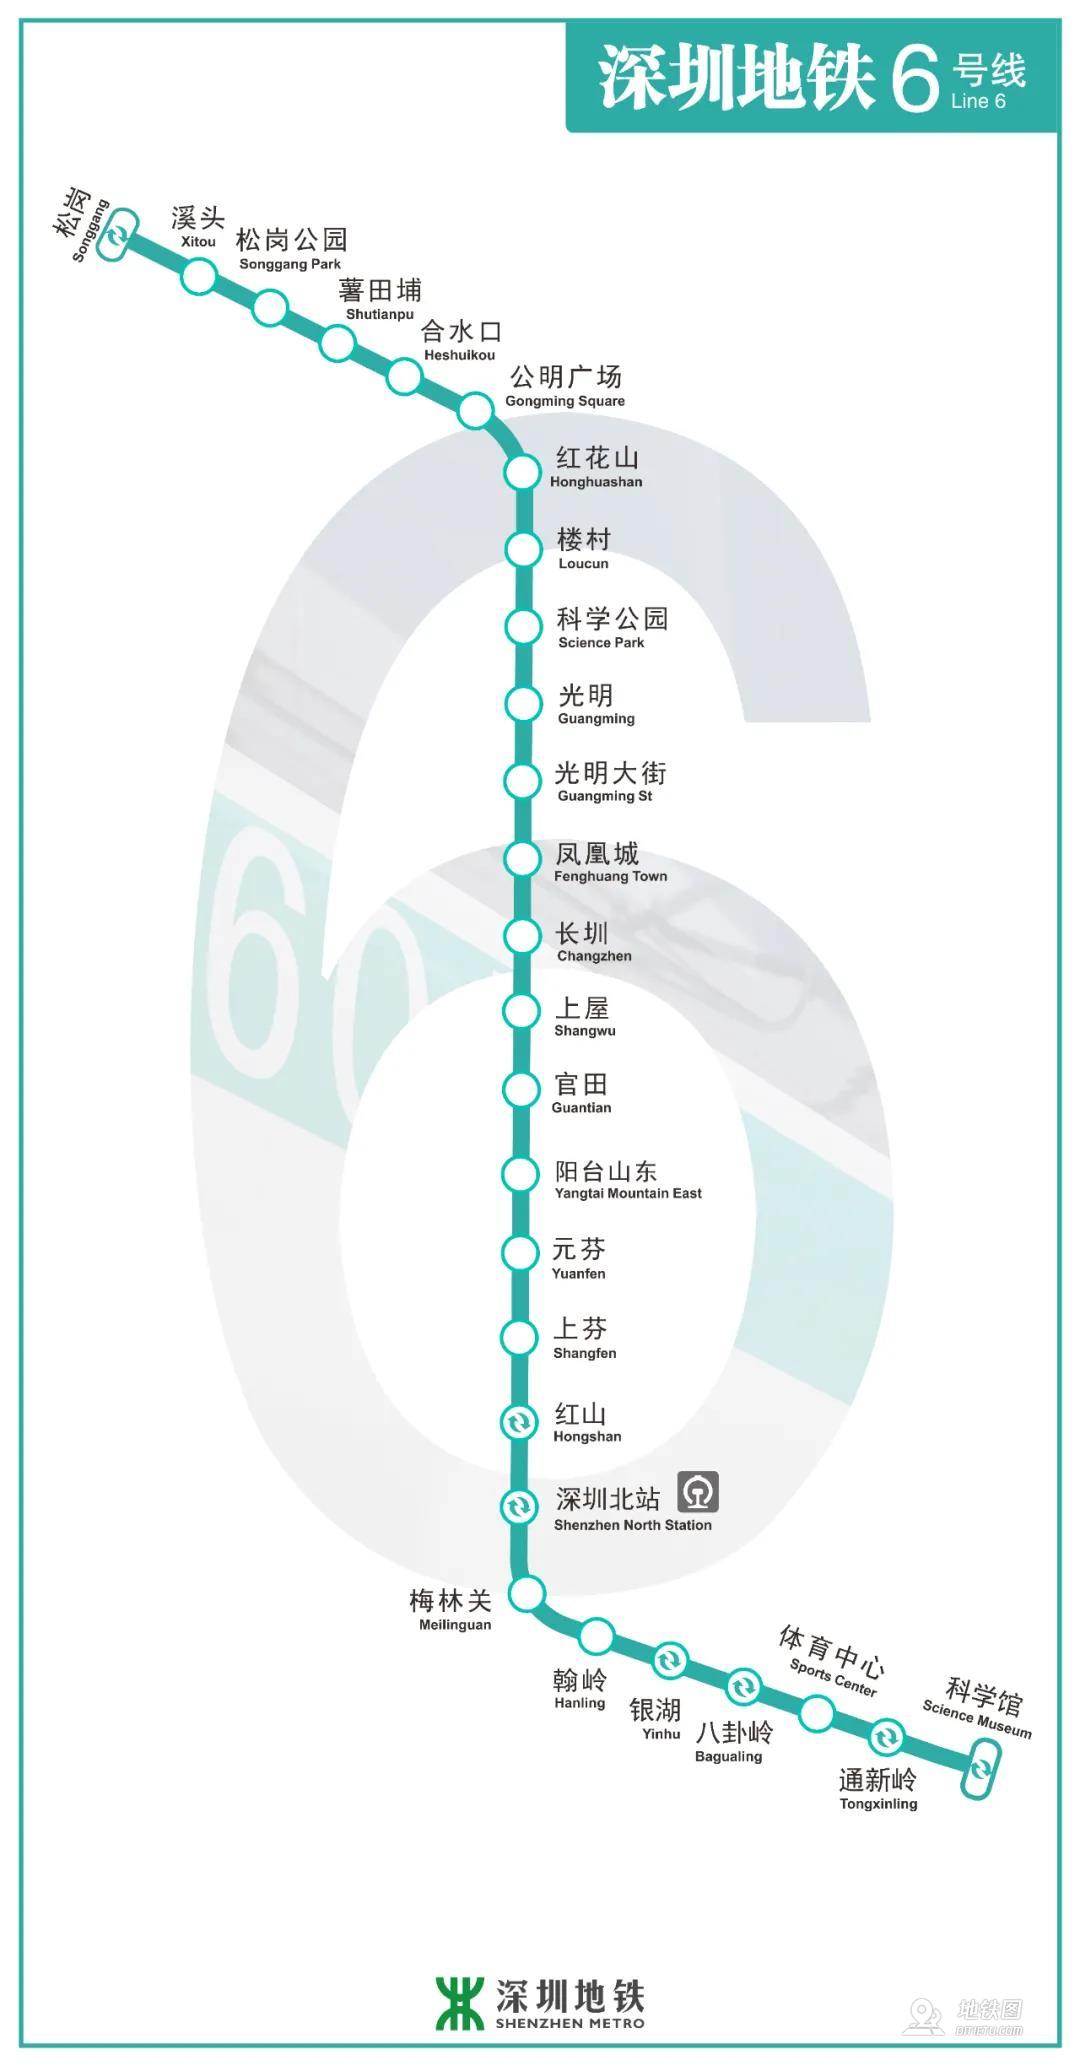 深圳地铁6号线线路图运营时间票价站点查询下载